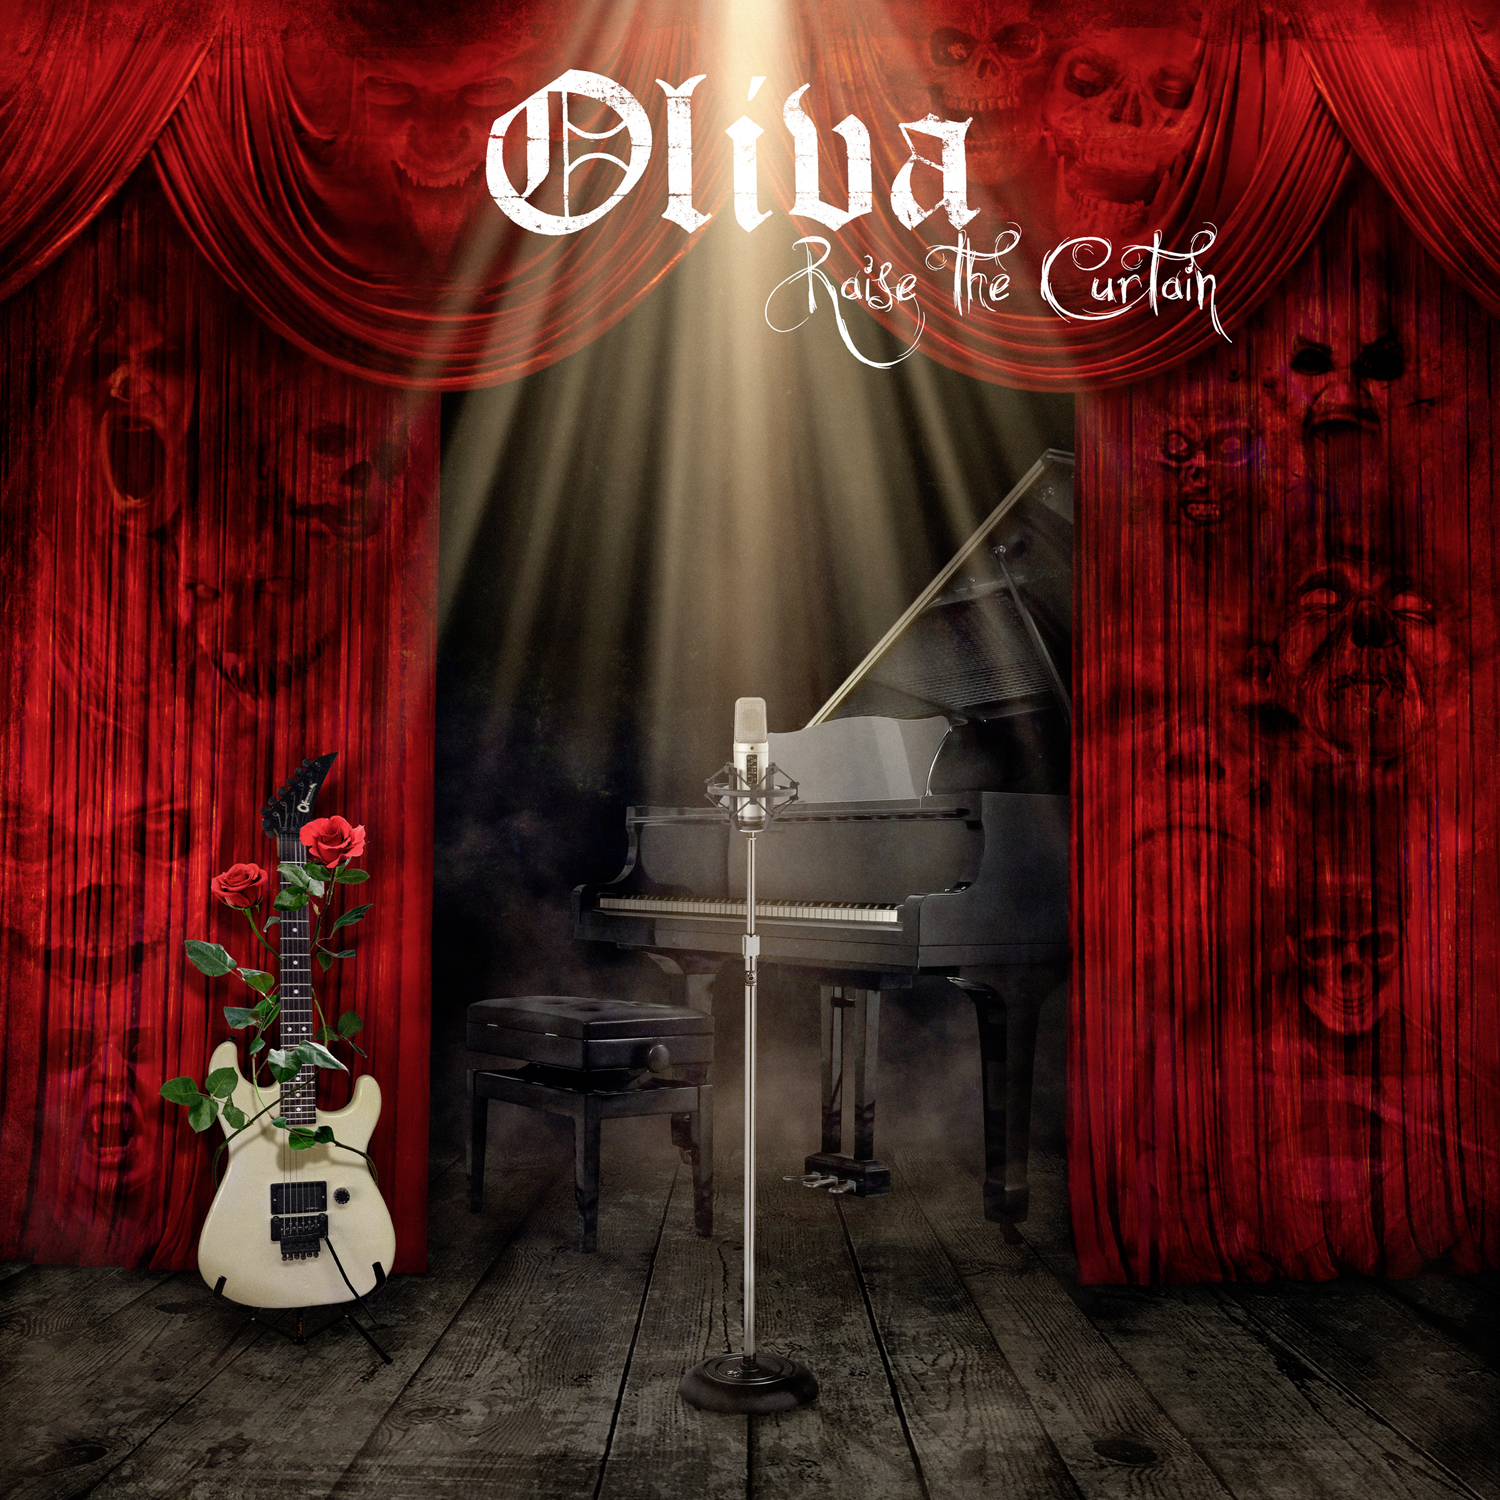 OLIVA – Raise the curtain